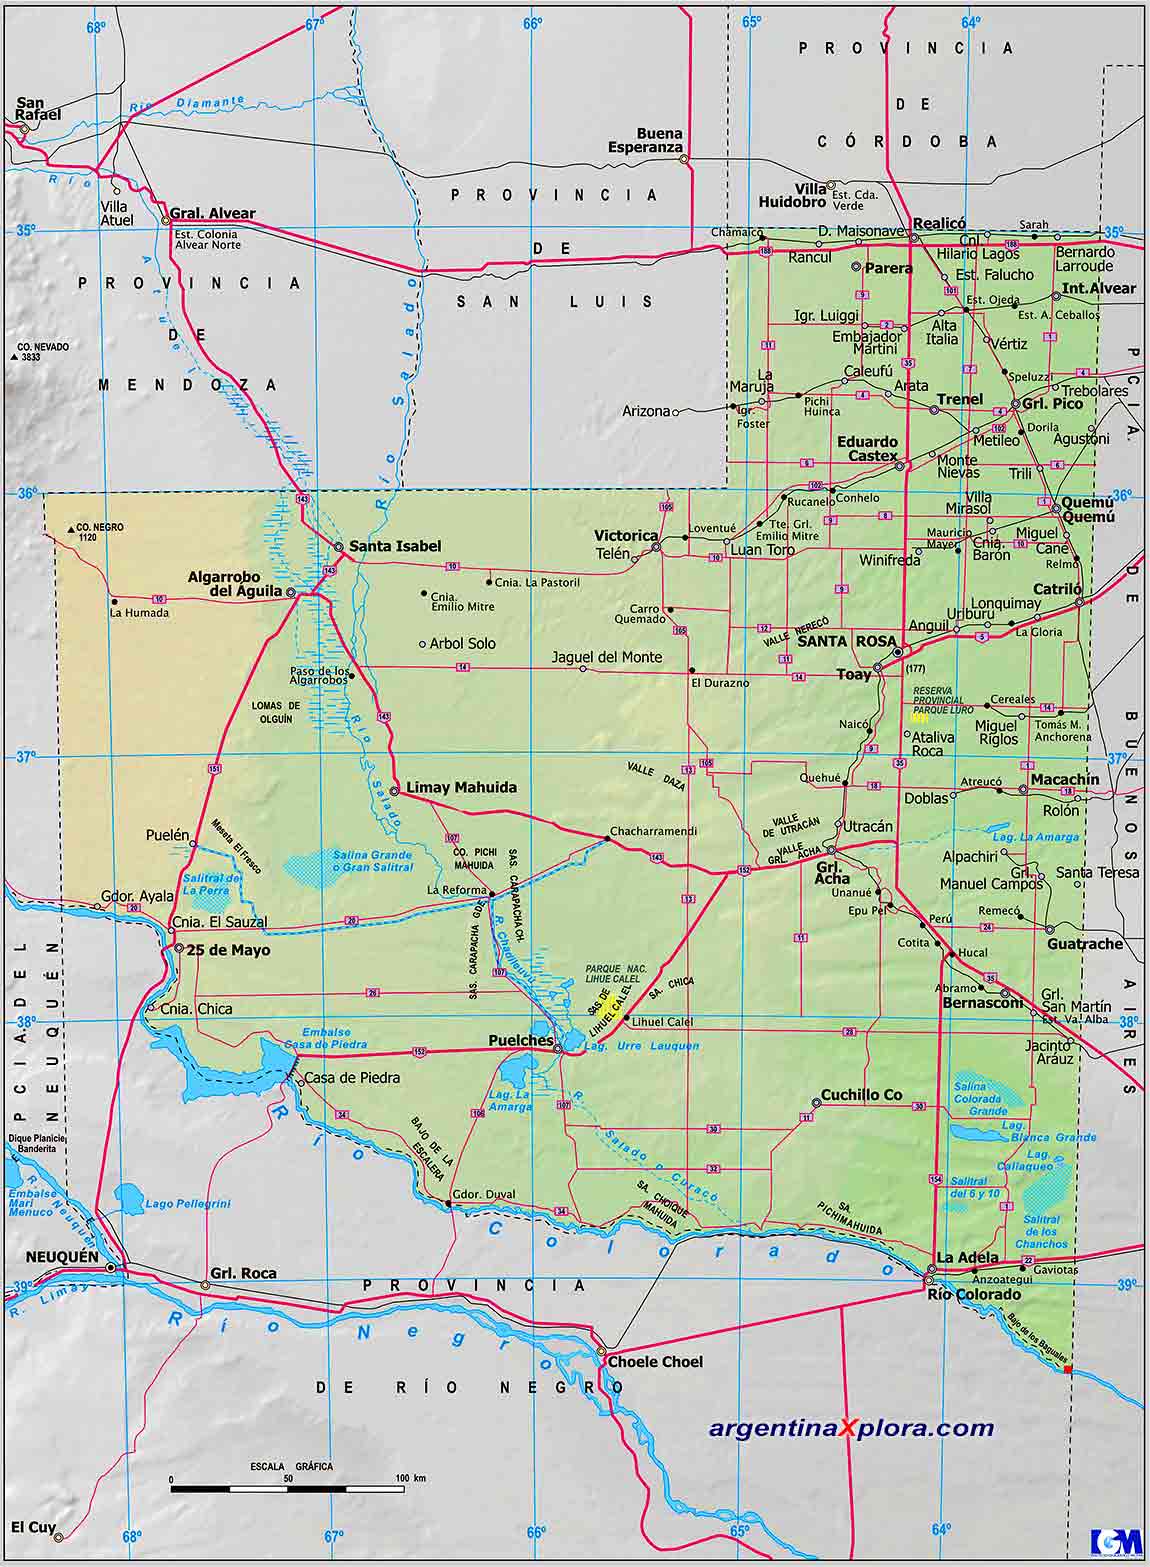 Mapa de la Provincia de La Pampa - Mapa de rutas y localidades Argentina